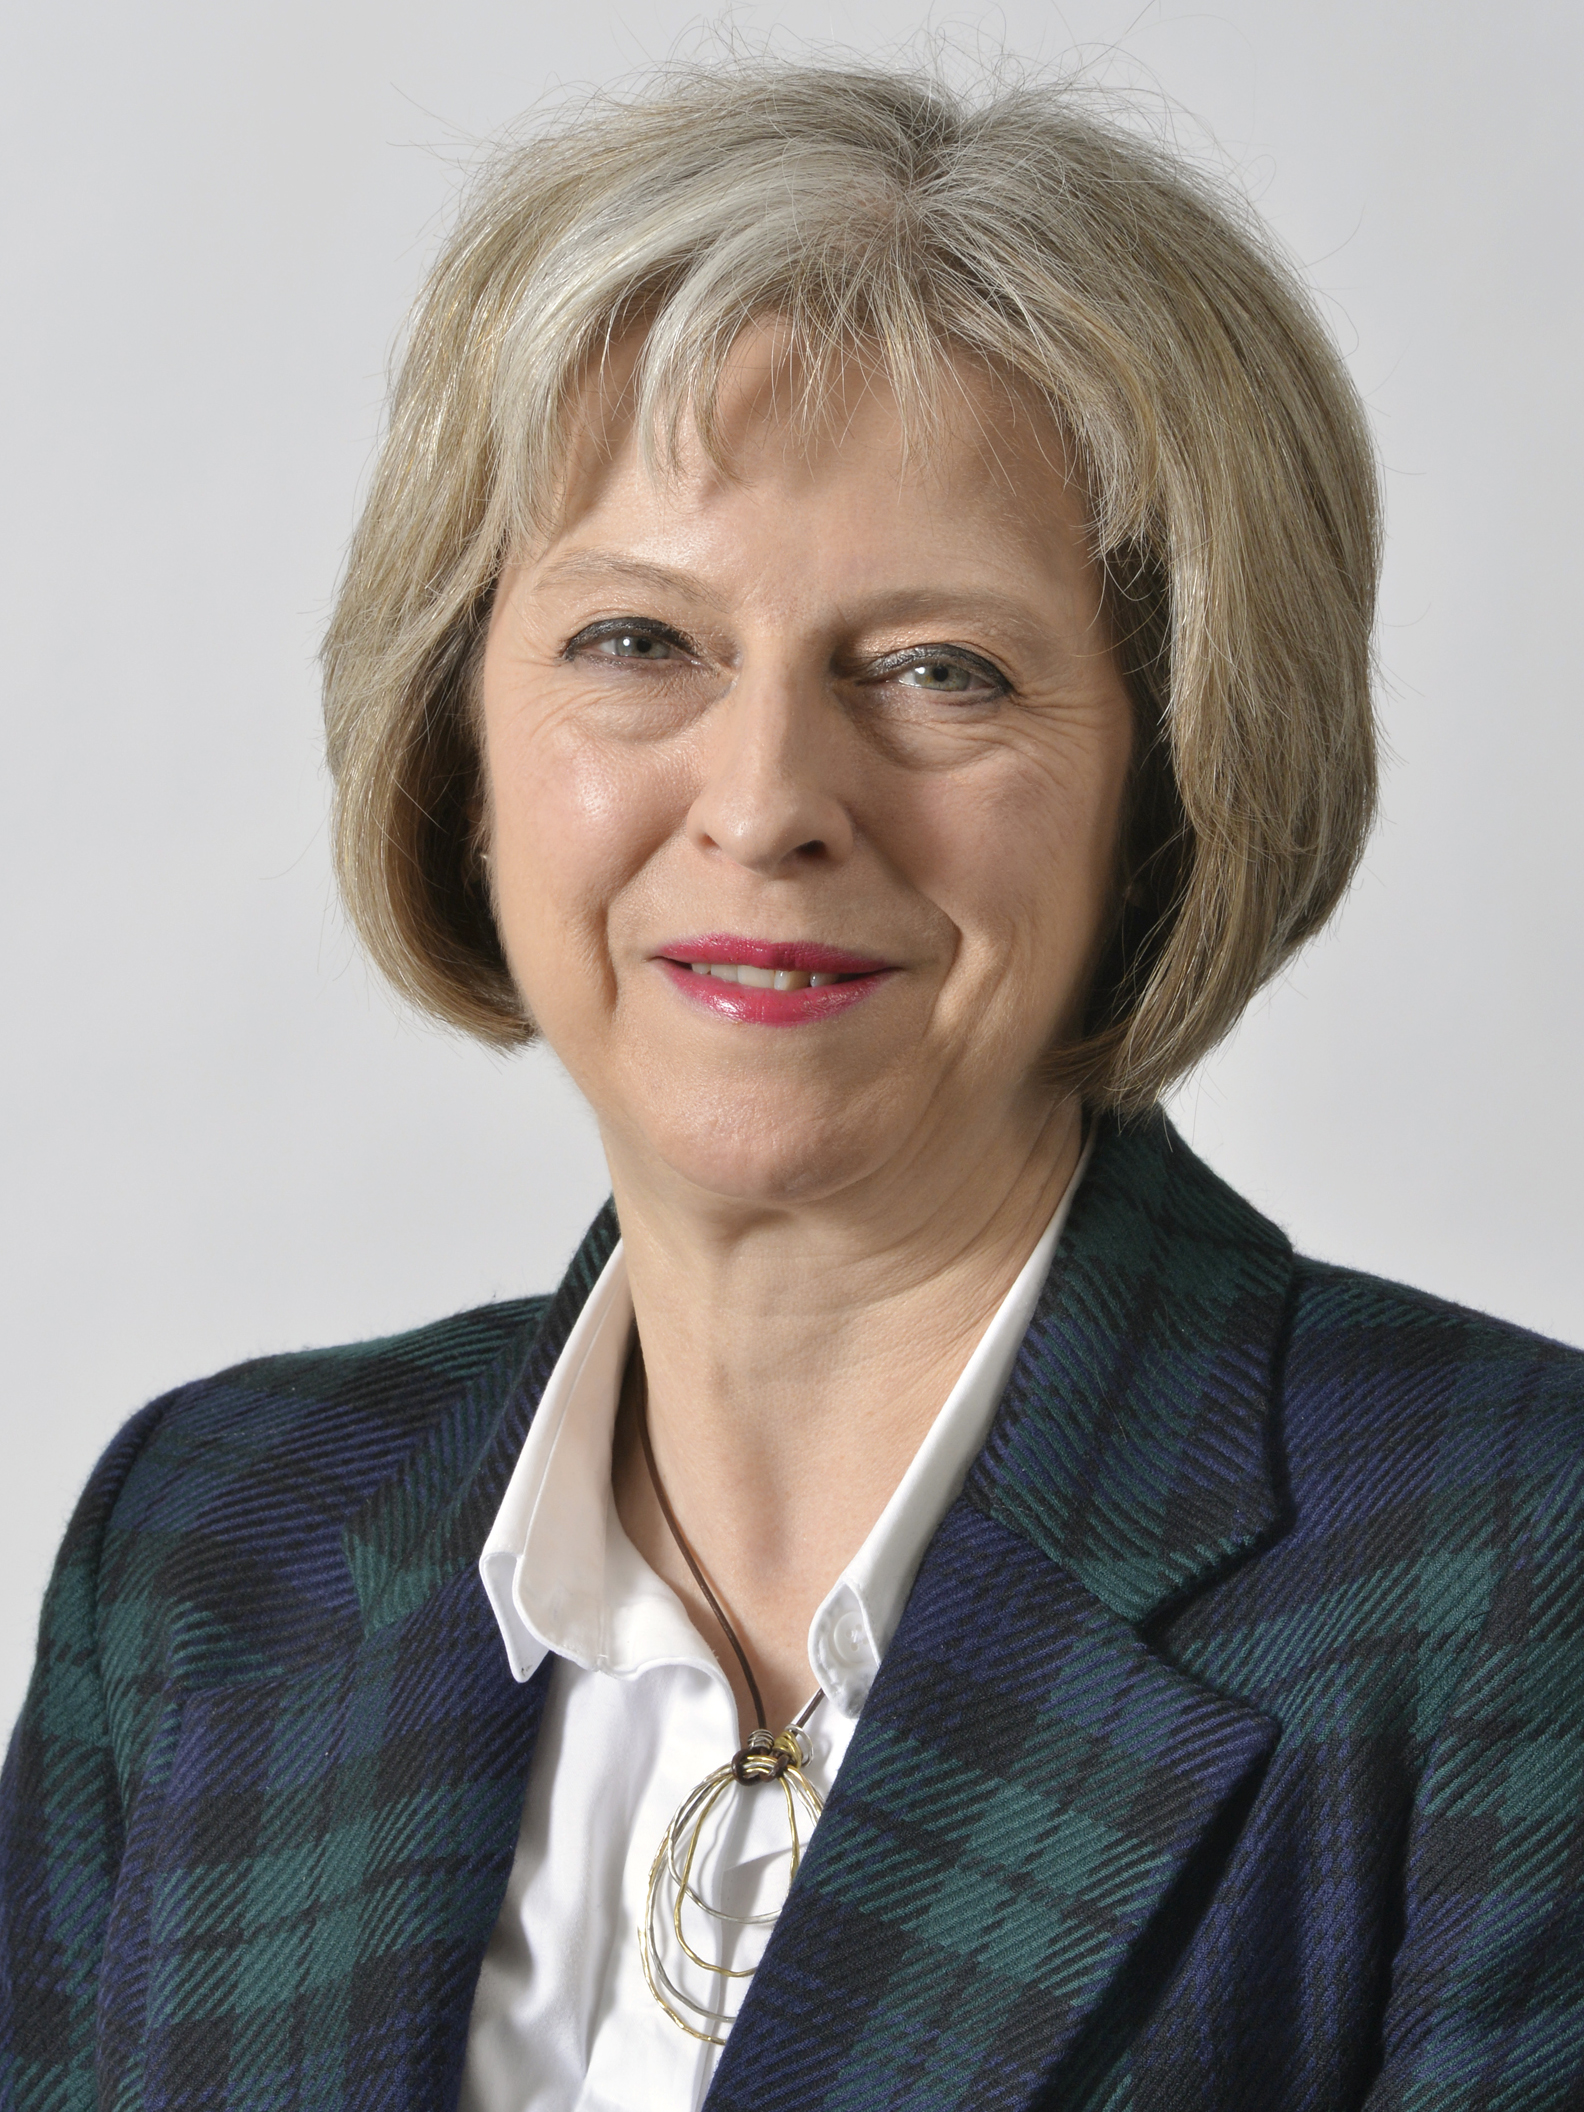 Премьер-министр Великобритании Тереза Мэй